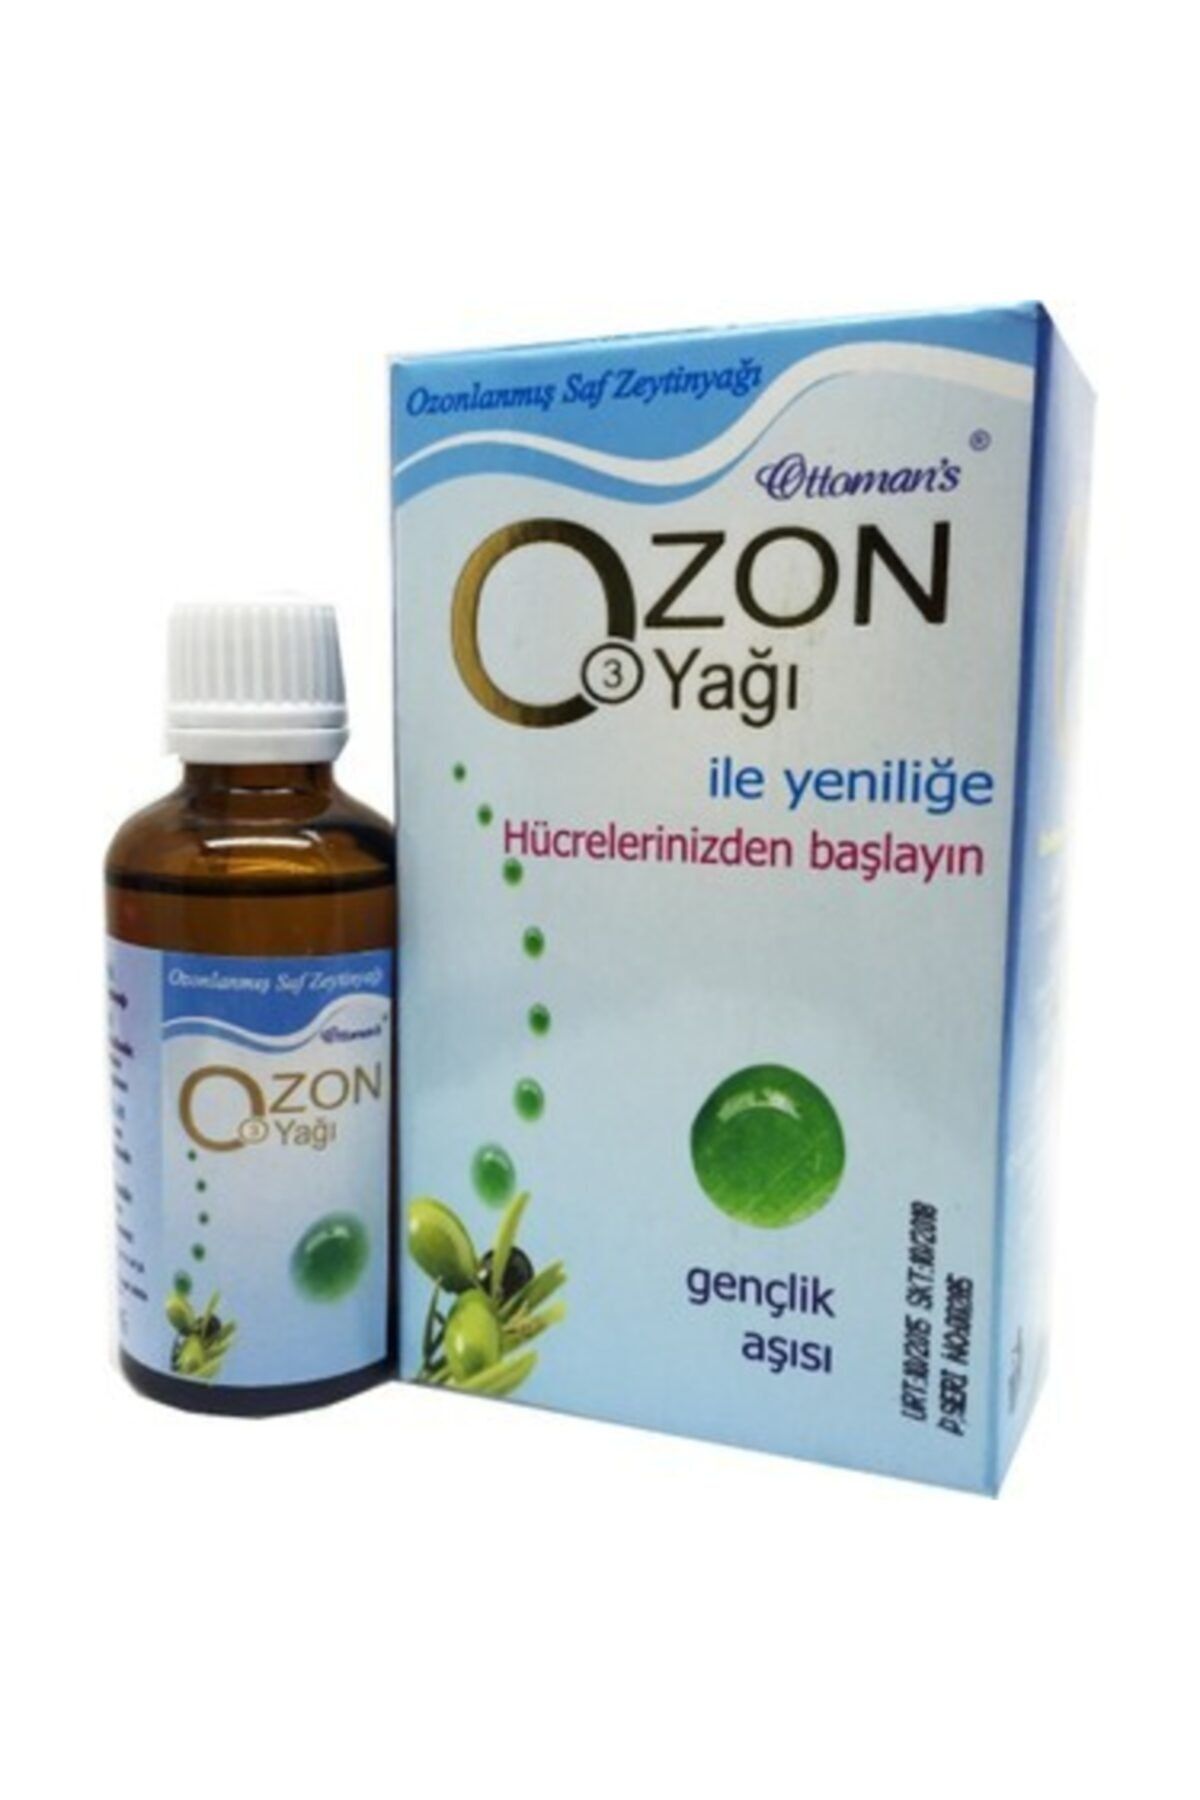 Ottoman's Ozon Yağı